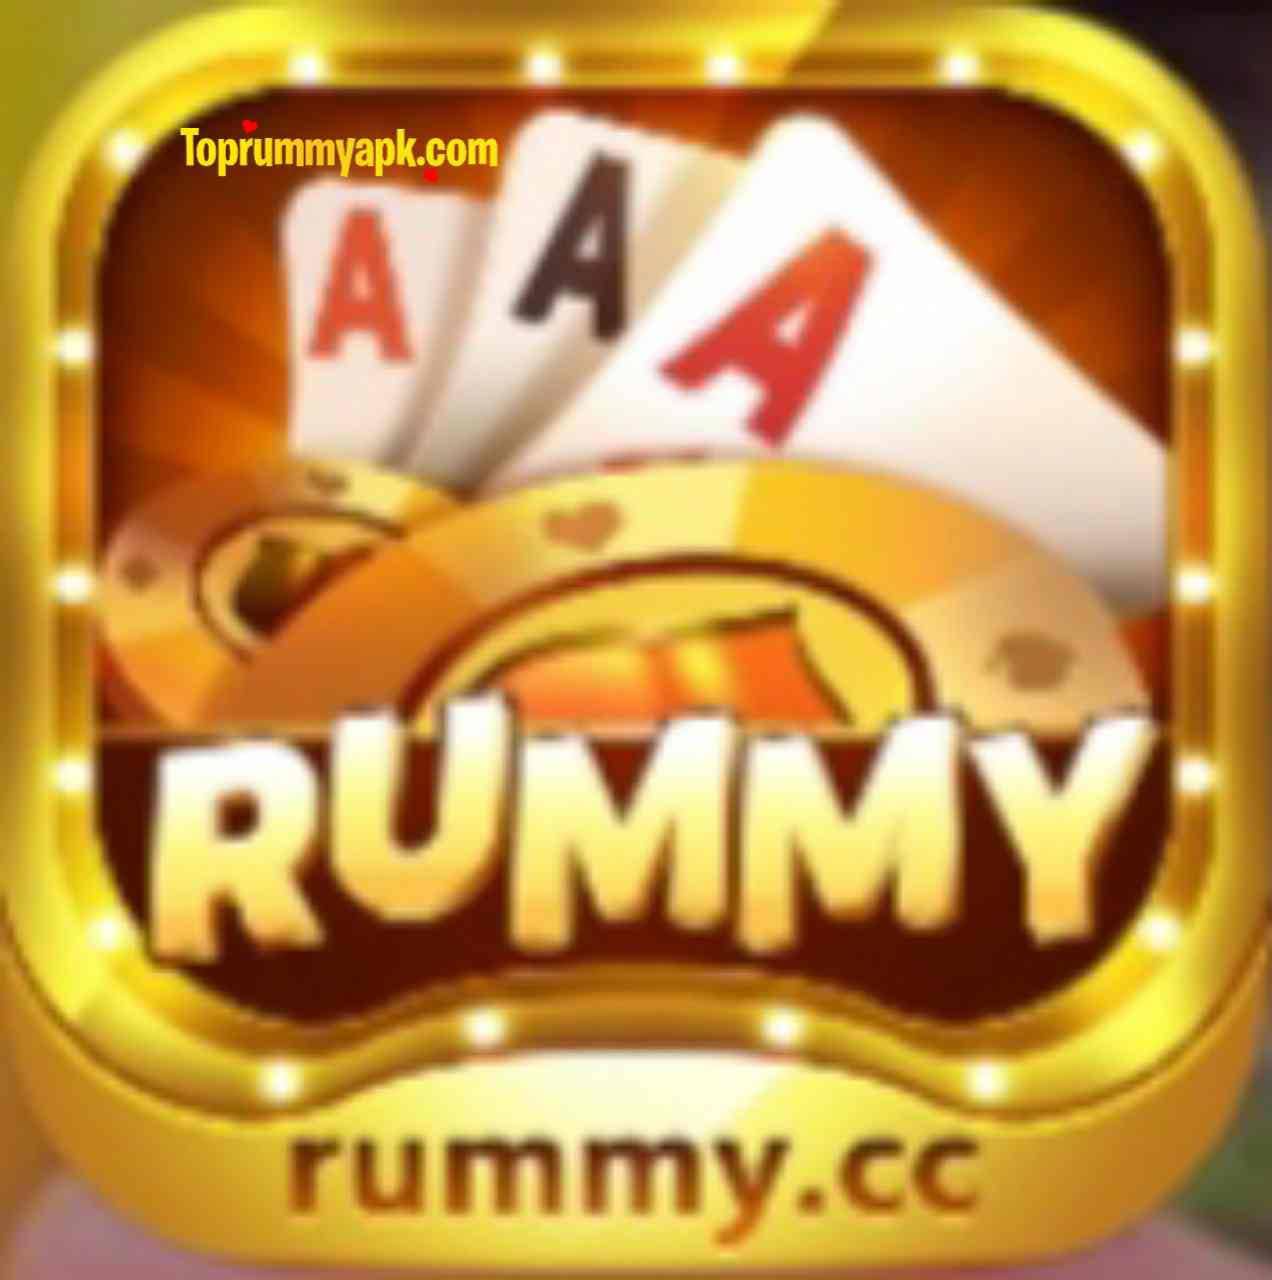 rummy cc